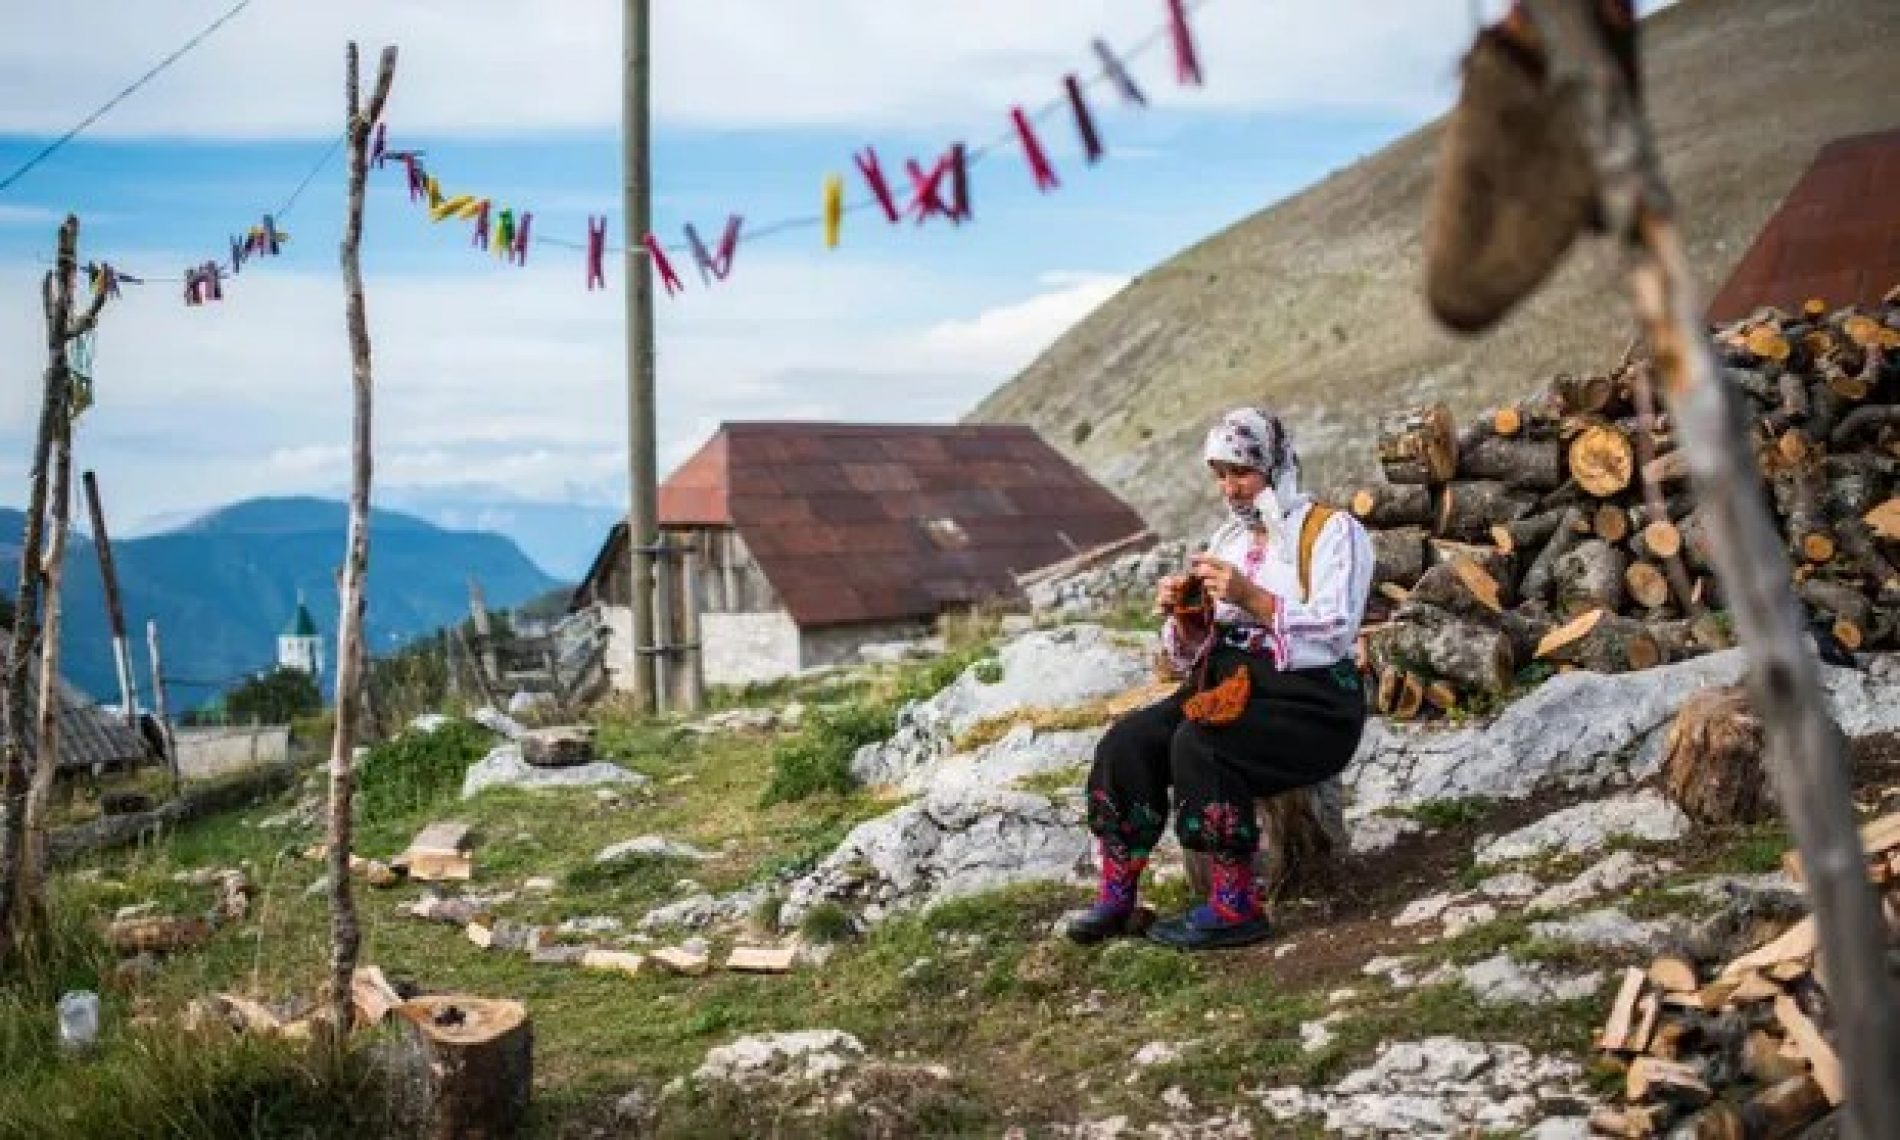 ‘Blaženo i izvanredno’: omiljena mjesta čitalaca The Guardiana u Evropi – Sarajevo i Lukomir među odabranima